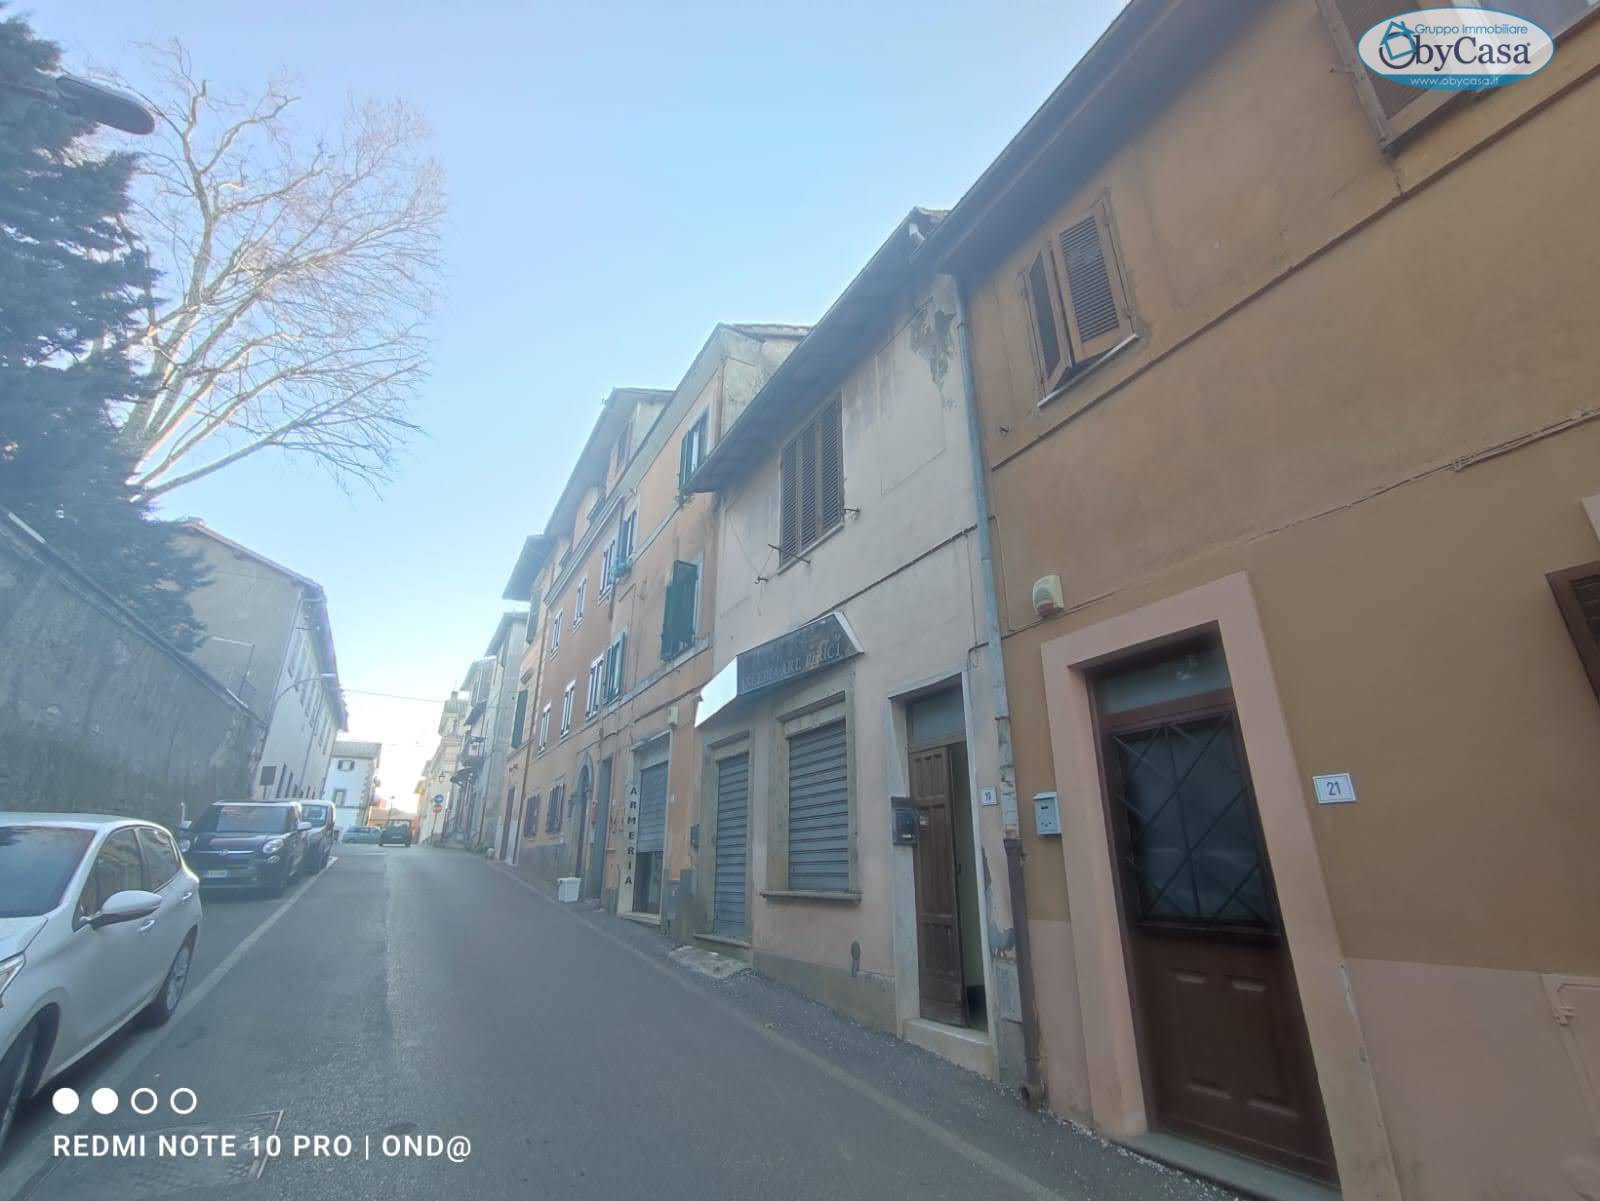 Appartamento in vendita a Manziana, 3 locali, zona Località: centro1, prezzo € 69.000 | PortaleAgenzieImmobiliari.it